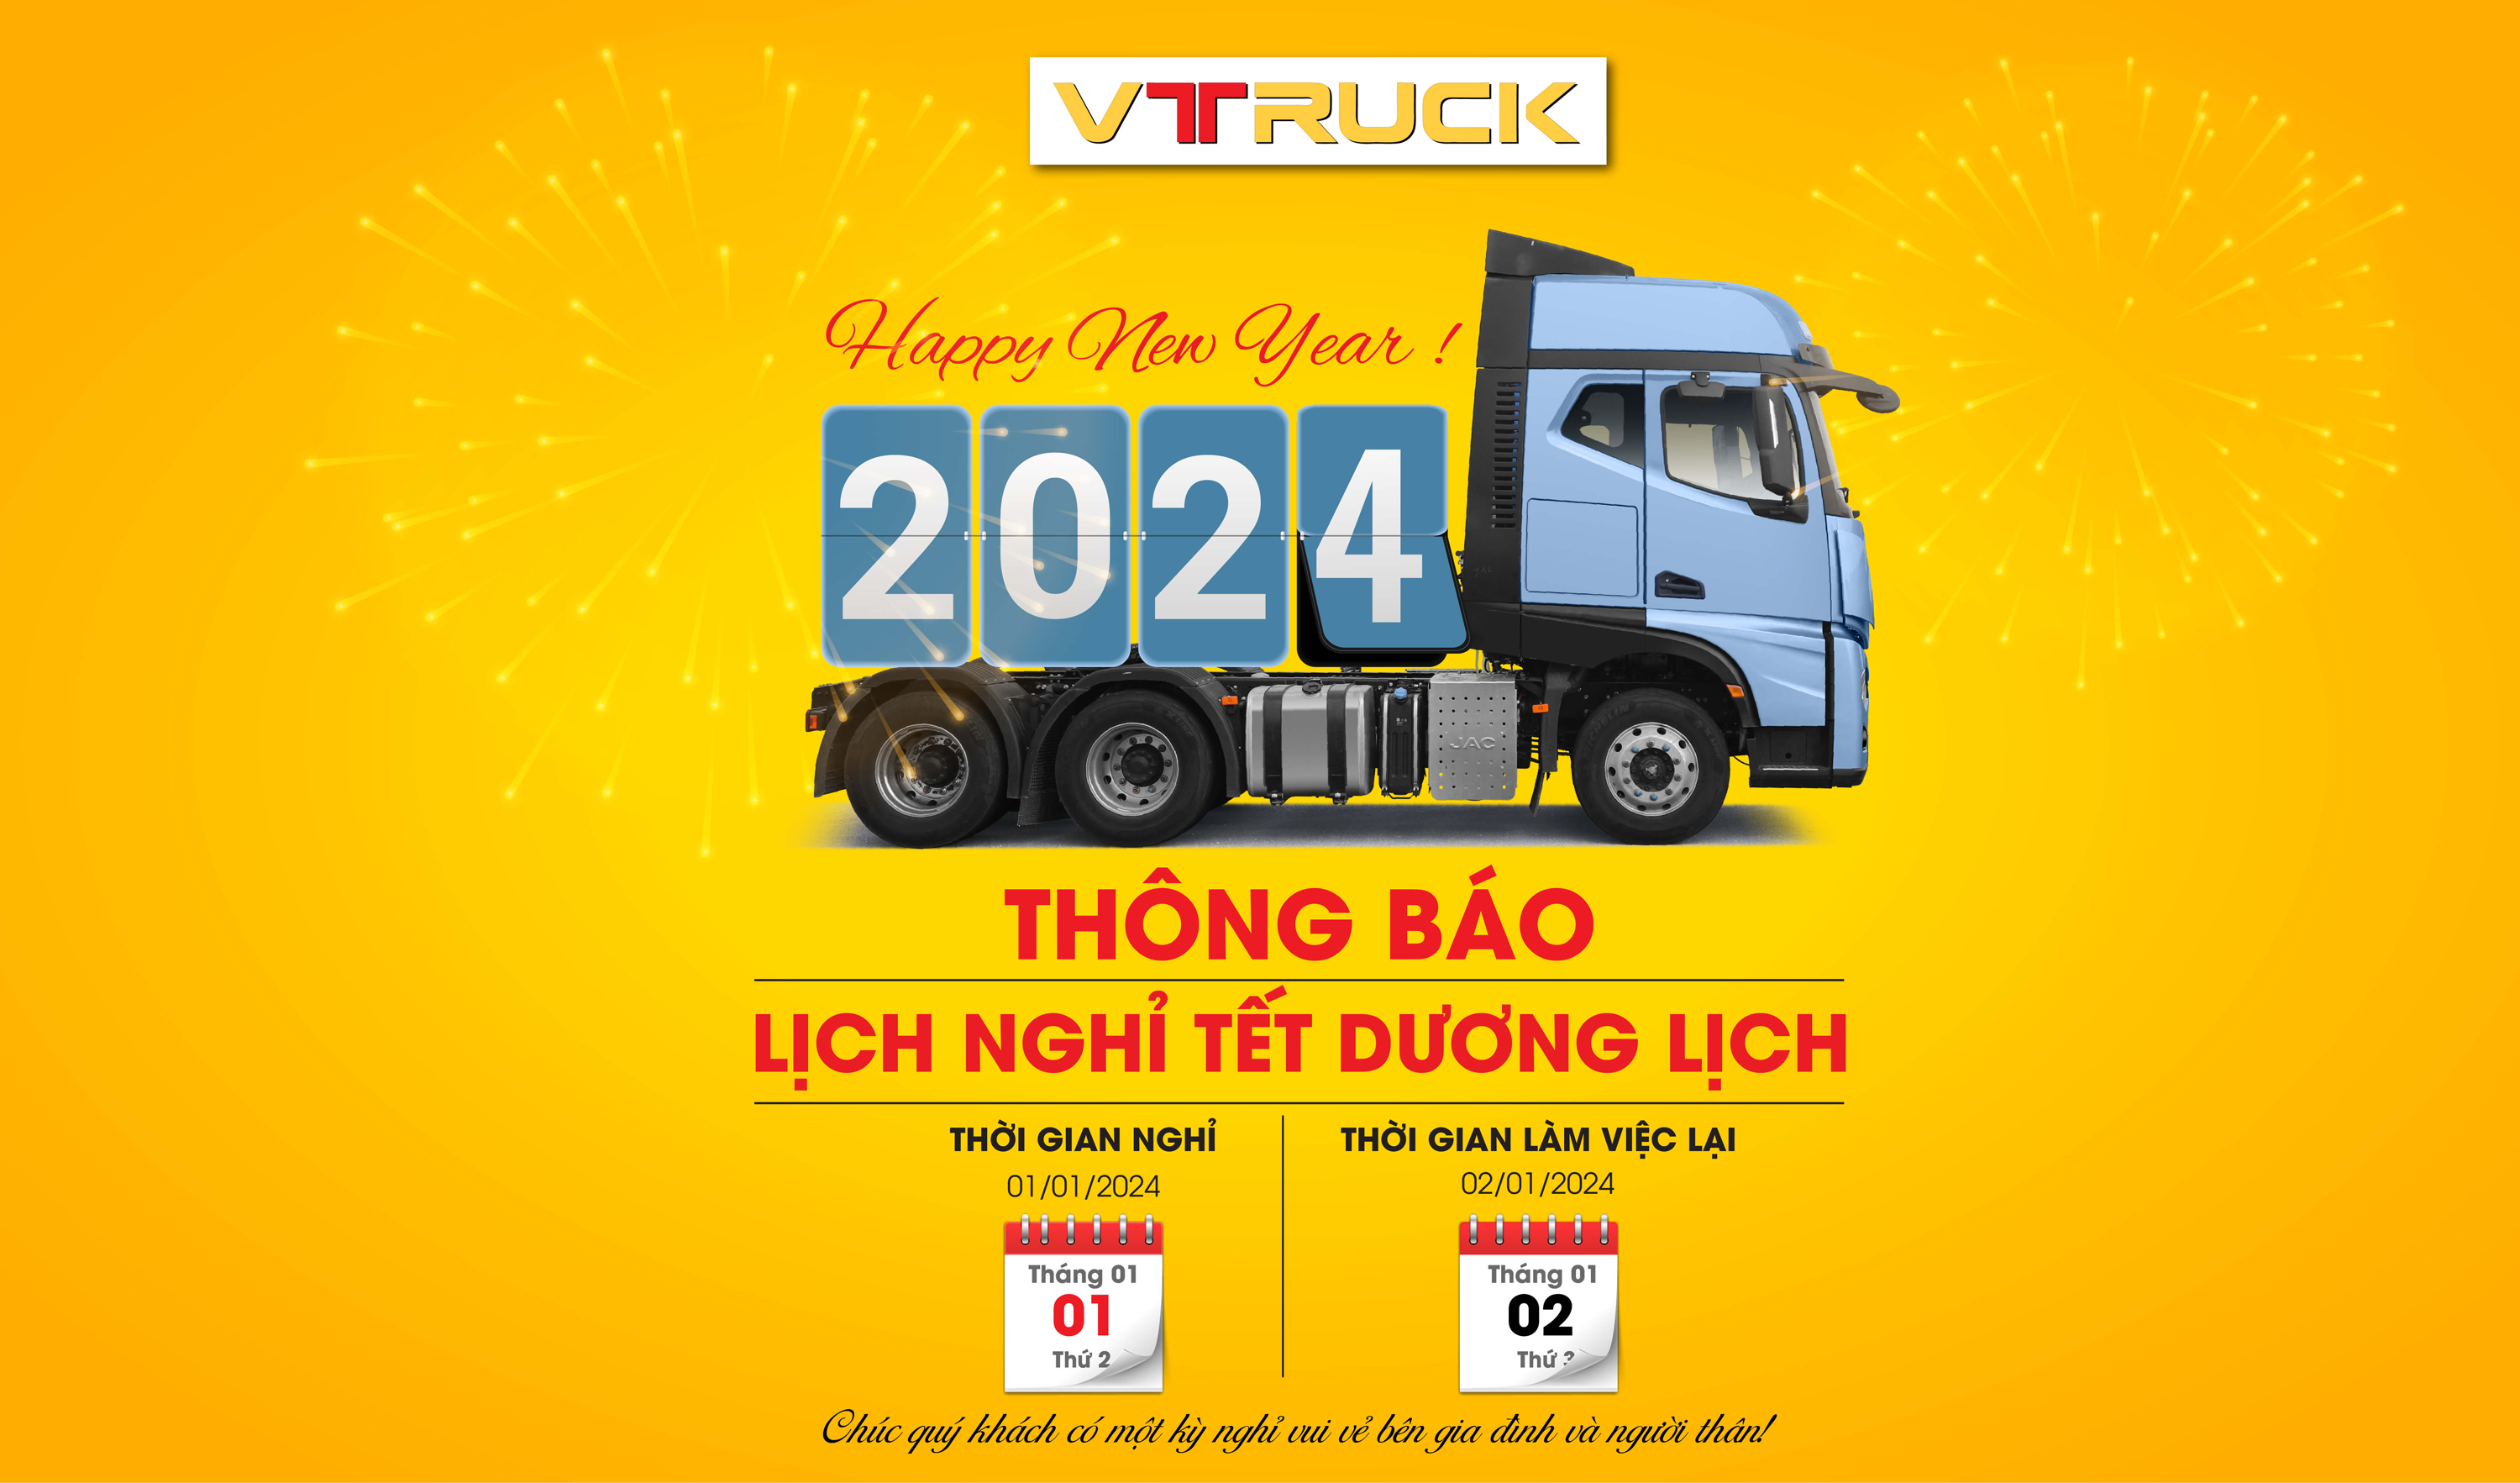 Công ty Cổ phần Ô tô tải Việt Nam (VTRUCK) trân trọng thông báo lịch nghỉ Tết dương lịch 2024 trên toàn hệ thống.